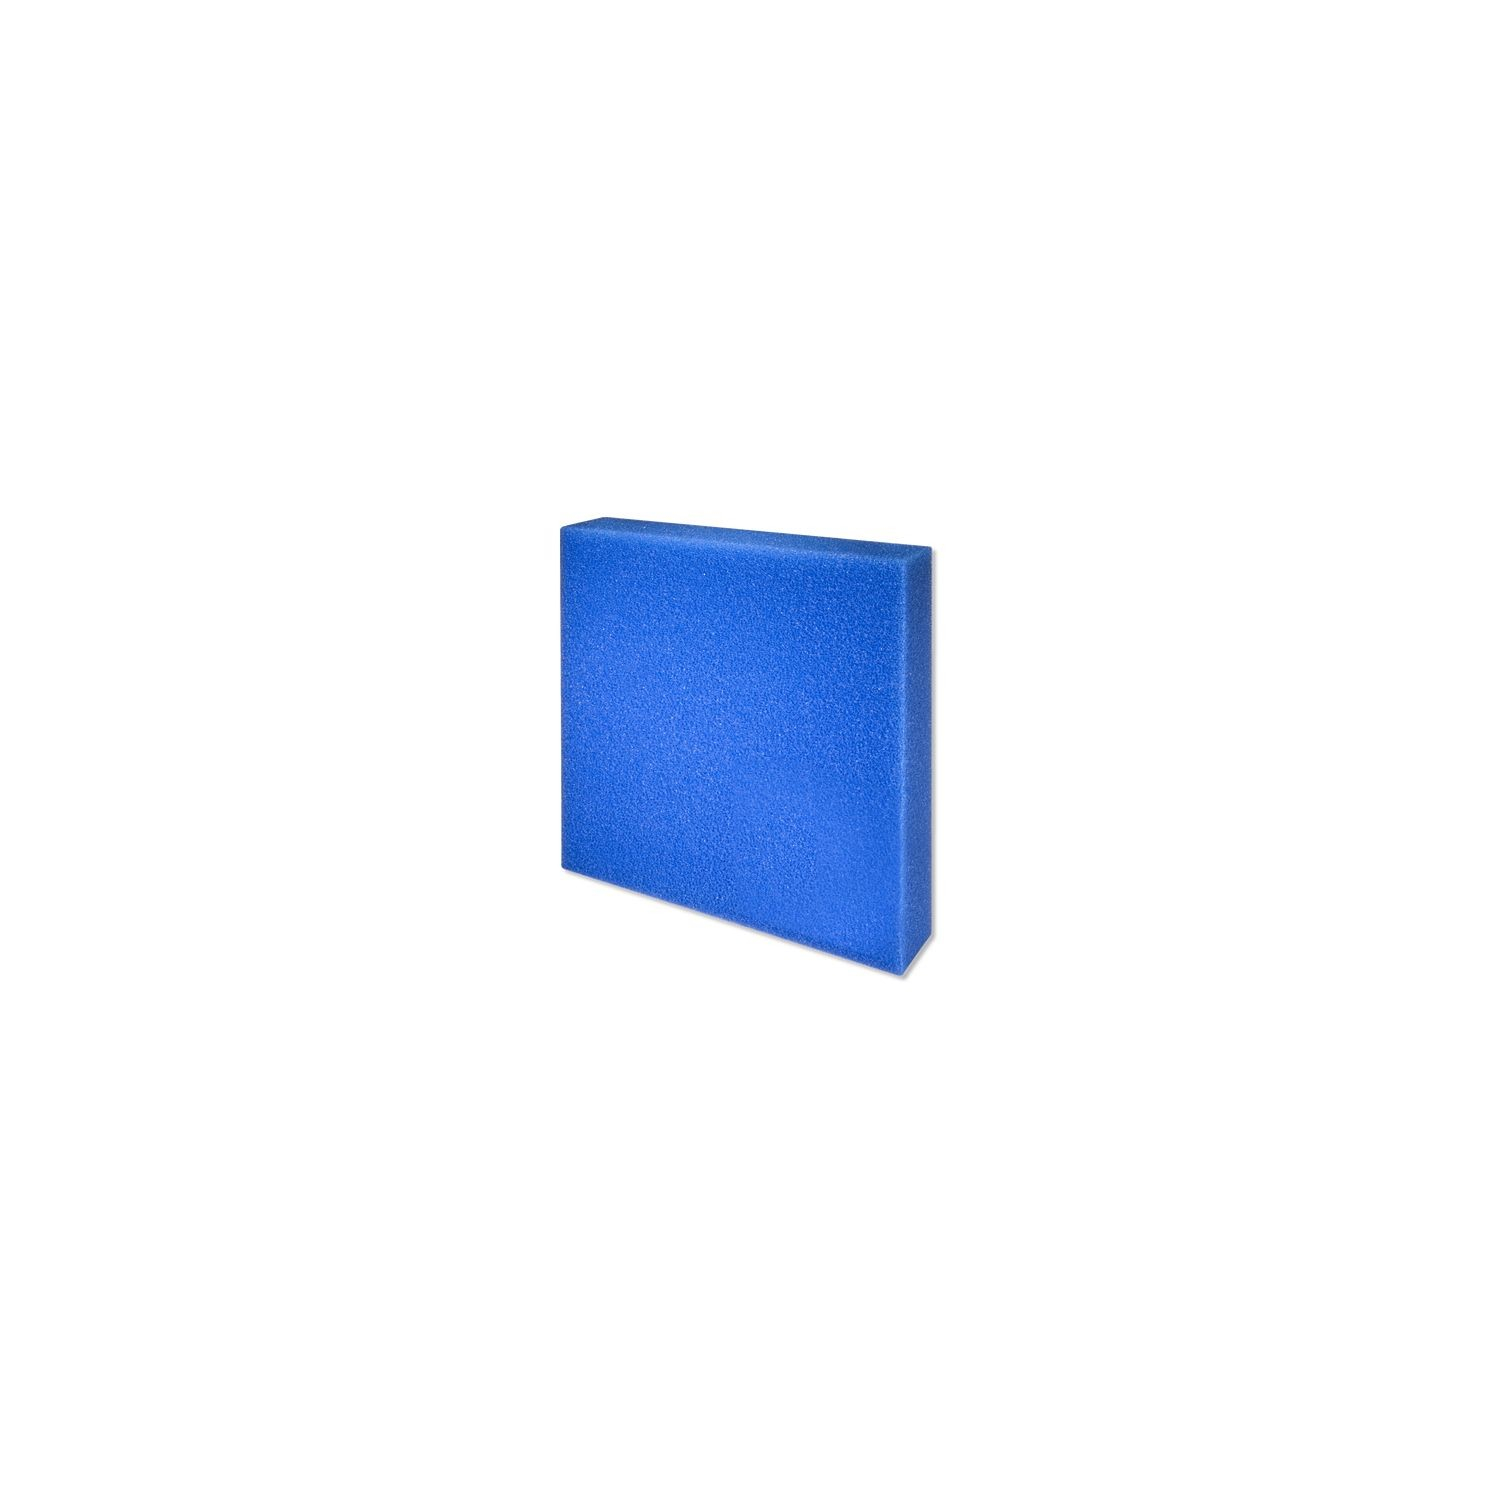 JBL Esponja filtrante azul poro fino o grueso - varios tamaños disponibles